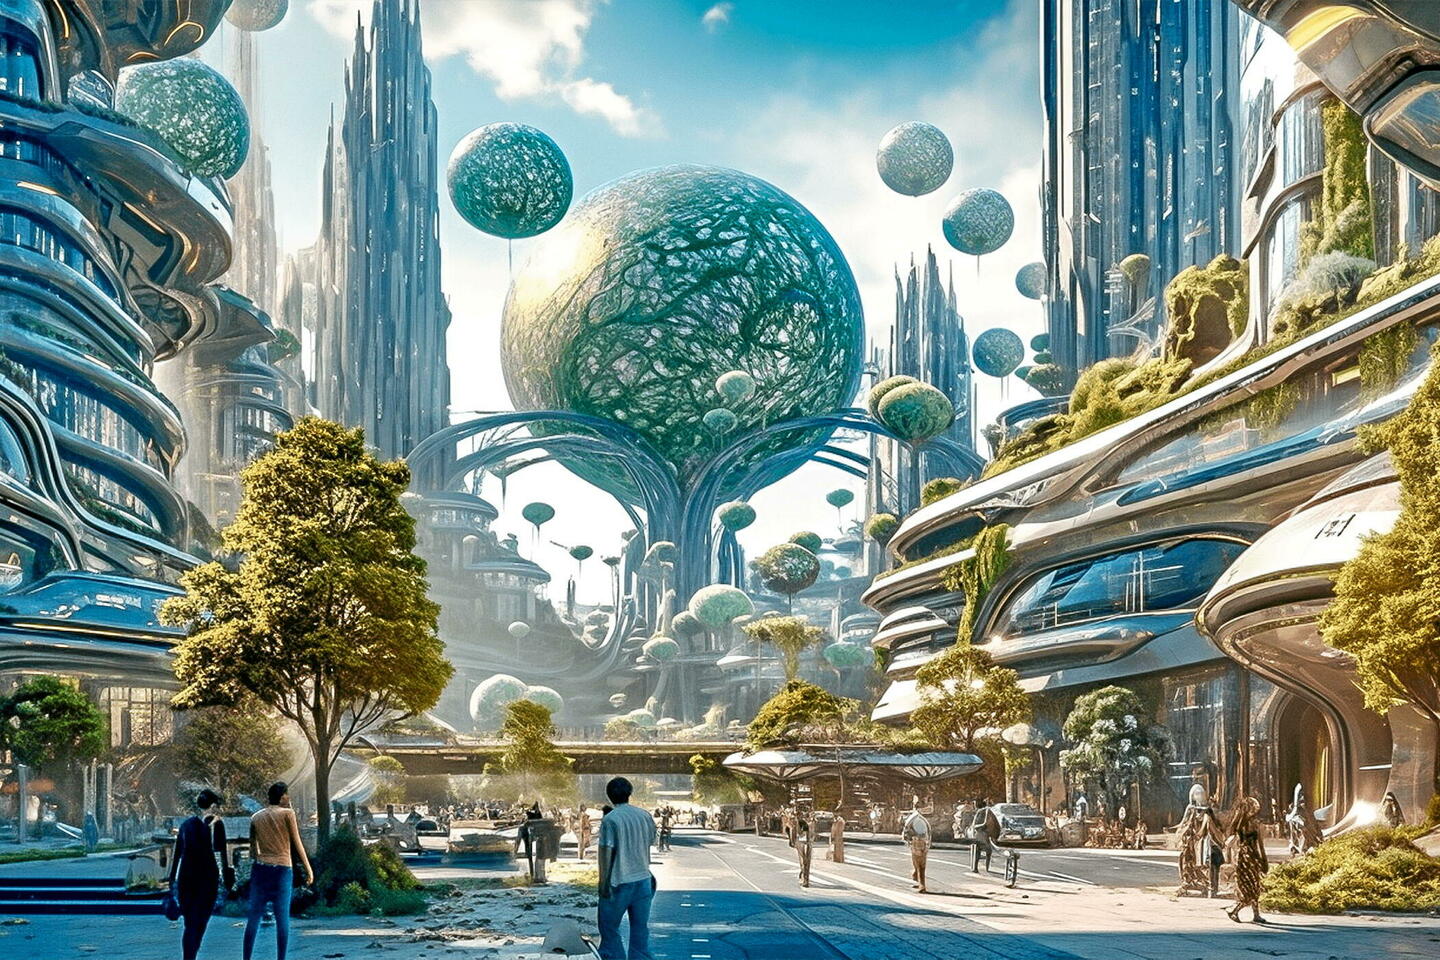 « Praxis », ce projet de ville futuriste promis par la Silicon Valley